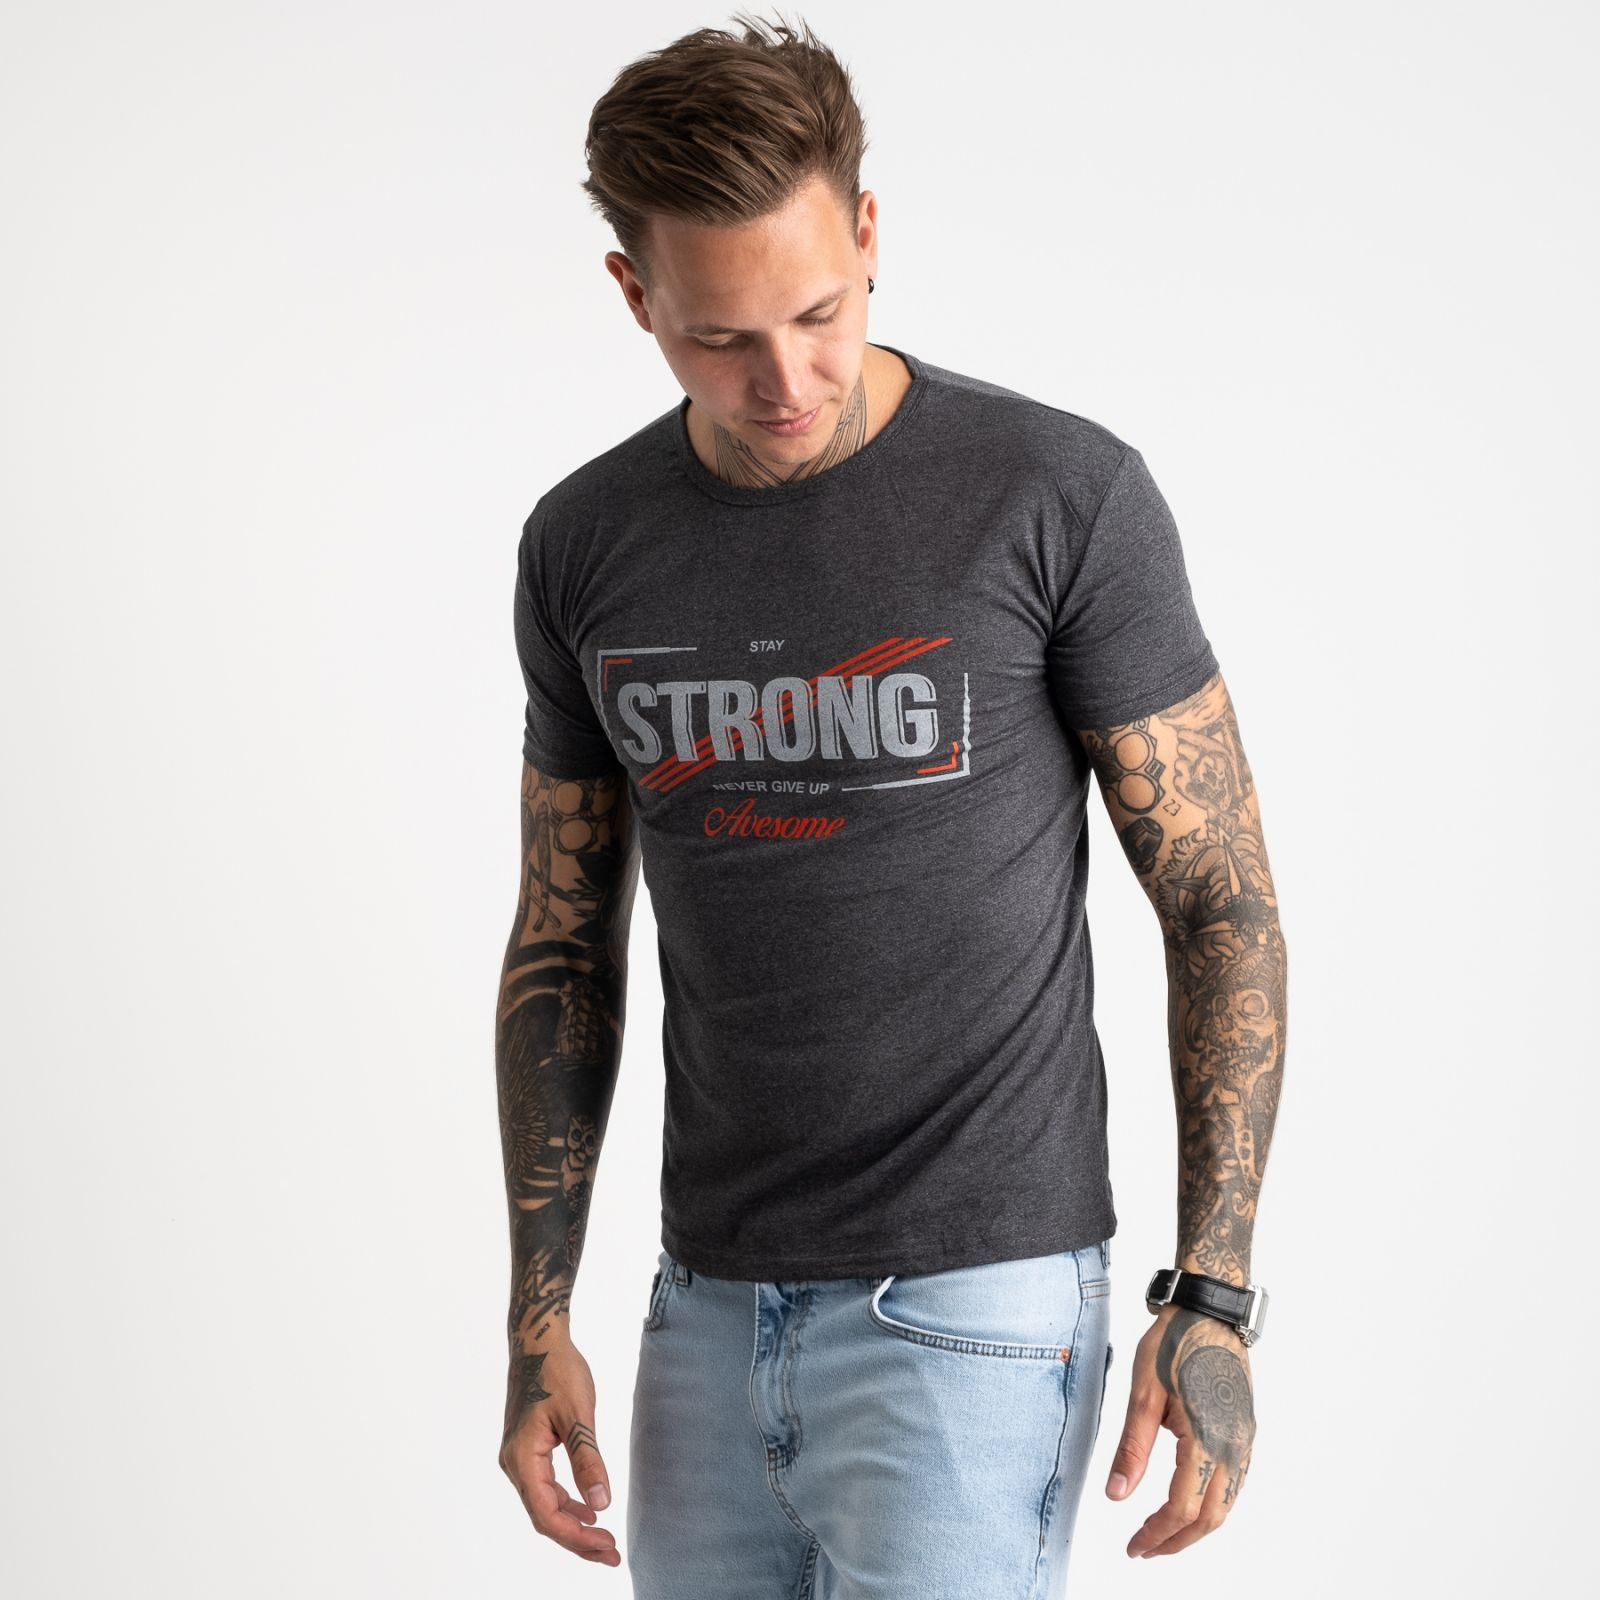 2612-16 темно-серая футболка мужская с принтом (4 ед. размеры: M.L.XL.2XL)